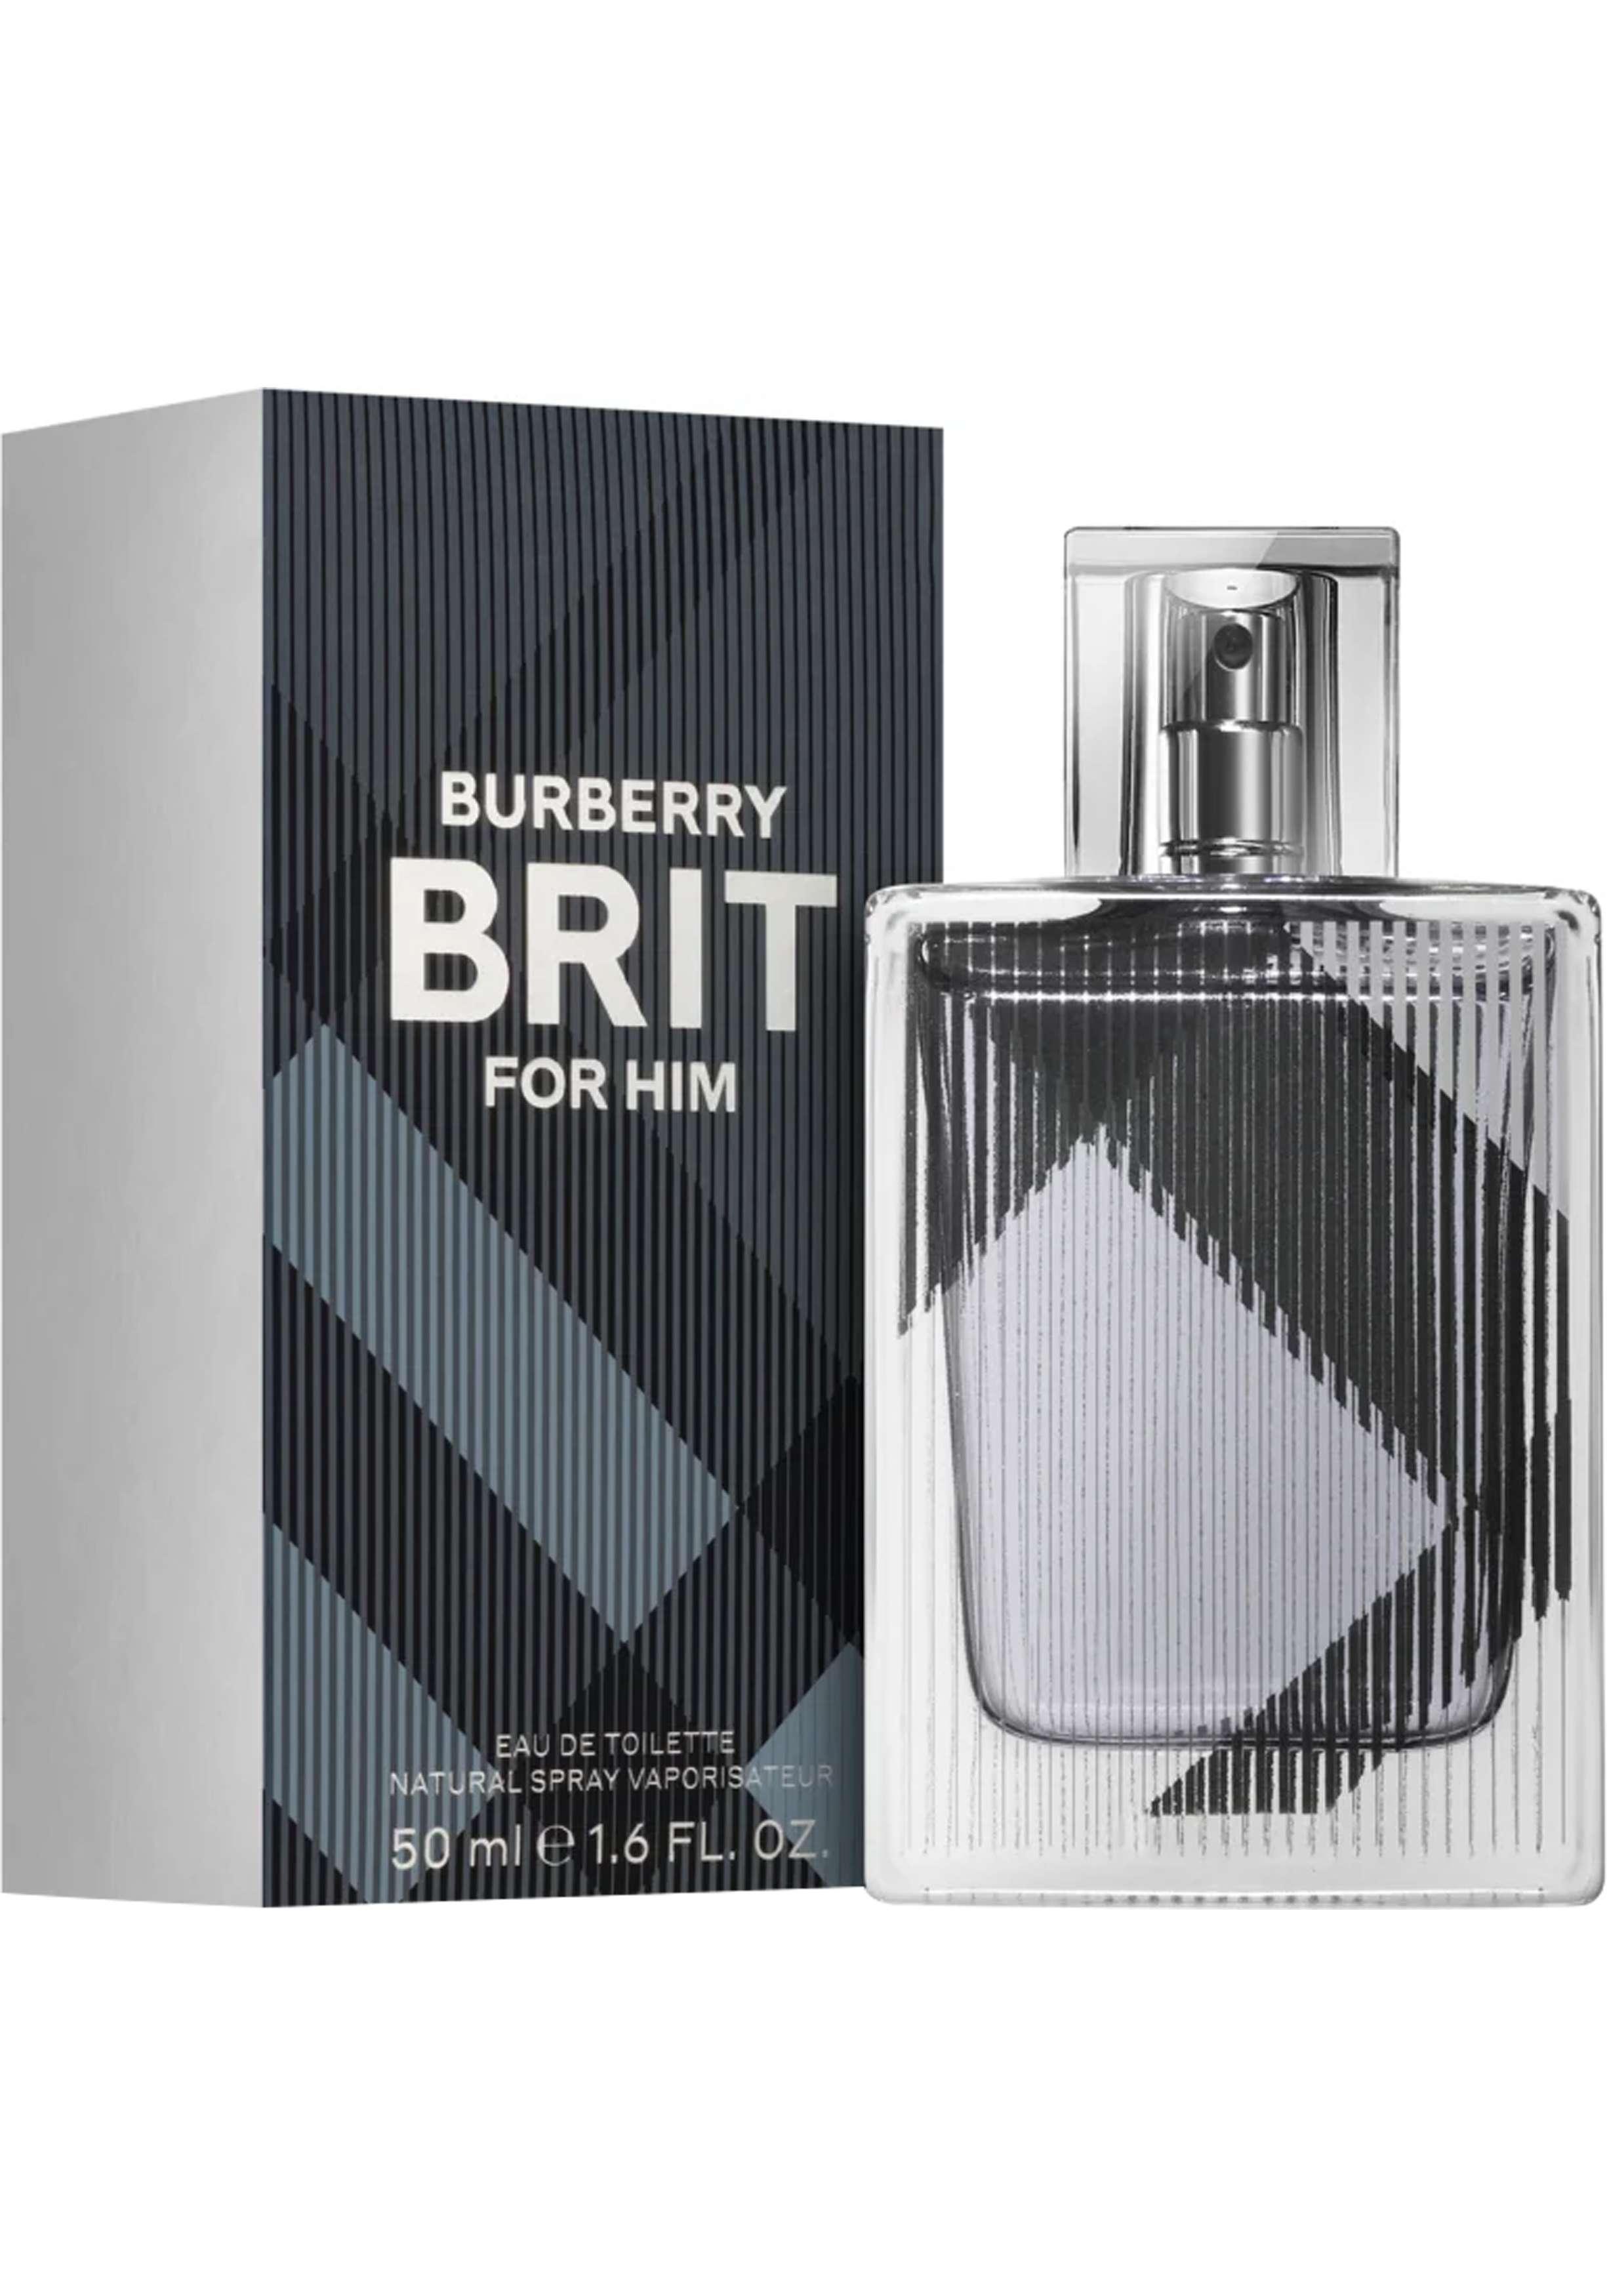 Verwarren Minder dan Berekening Heren Parfum, Burberry Brit for men, eau de toilette 50ml, zilveren... -  Shop de nieuwste voorjaarsmode